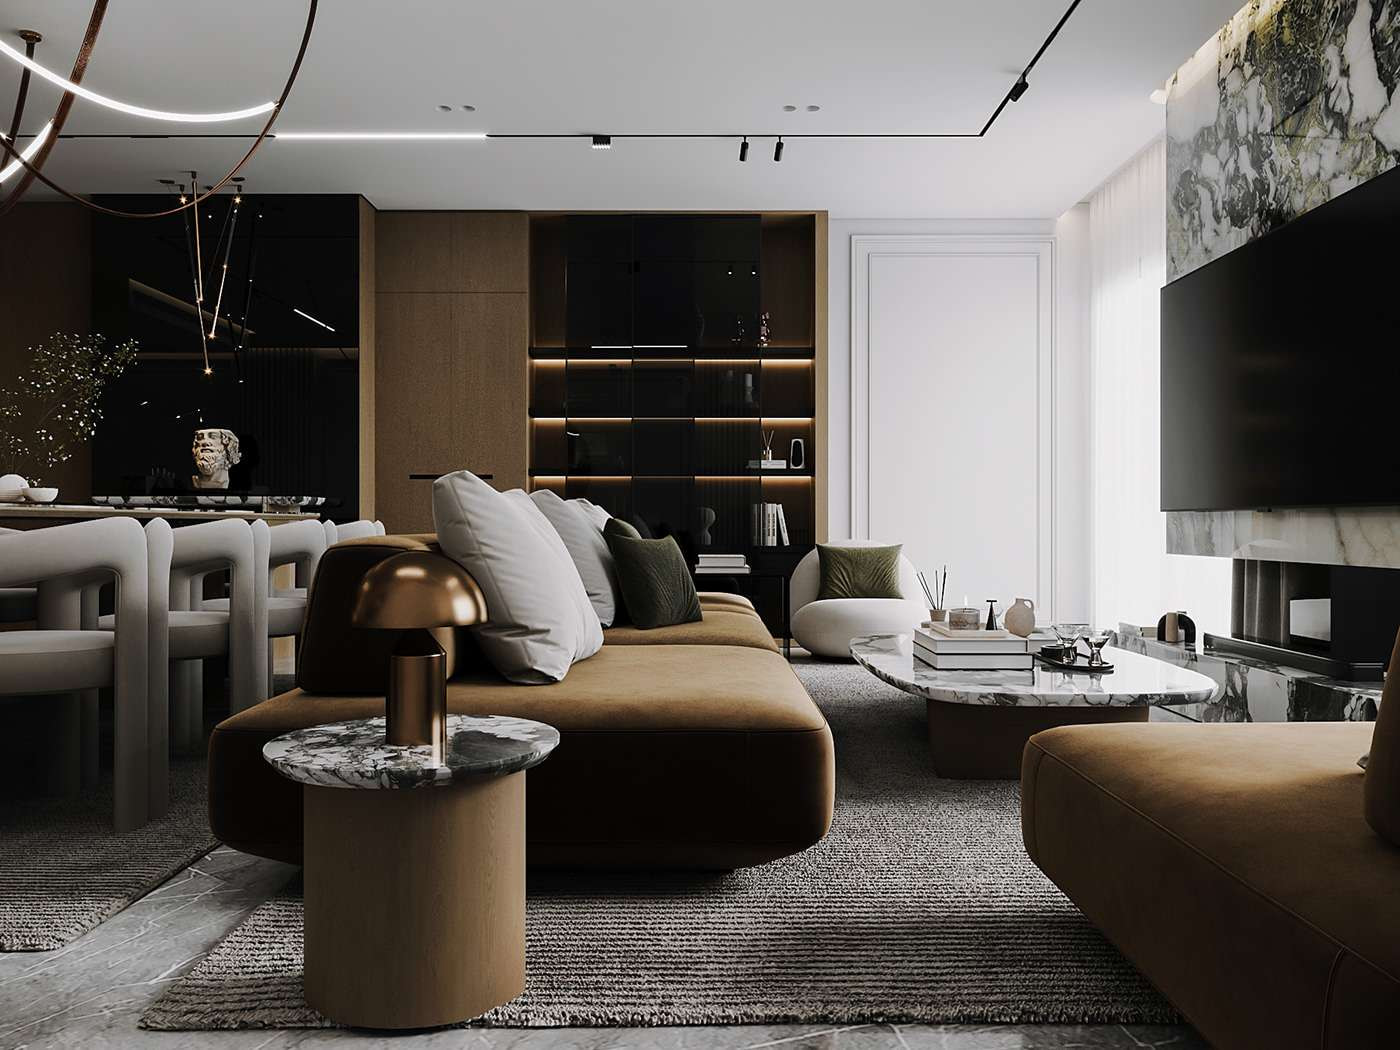 Phong cách Luxury sử dụng chất liệu nội thất đắt đỏ